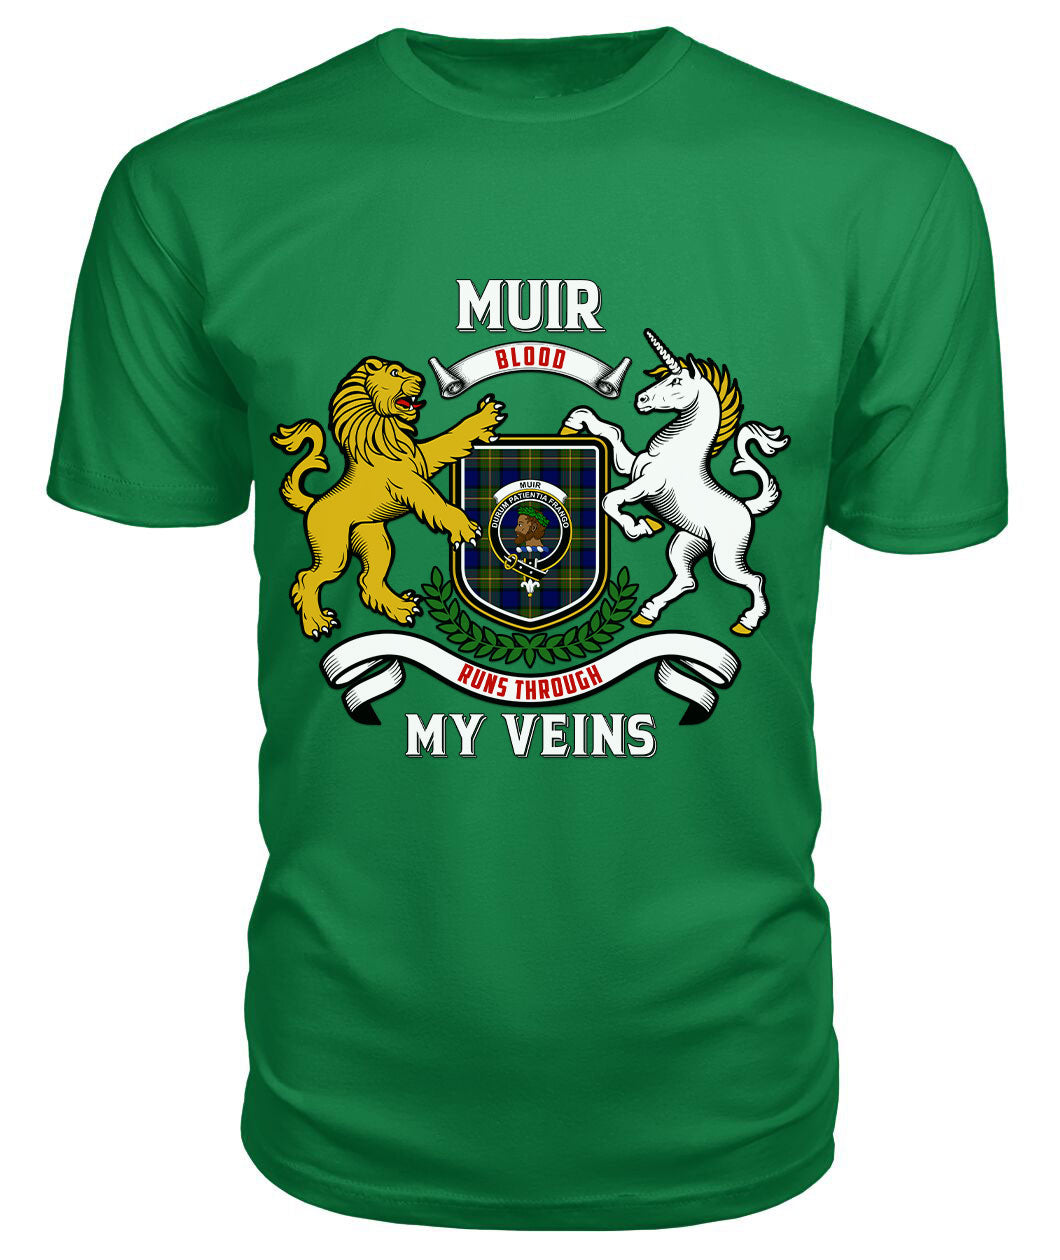 Muir Tartan Crest 2D T-shirt - Blood Runs Through My Veins Style